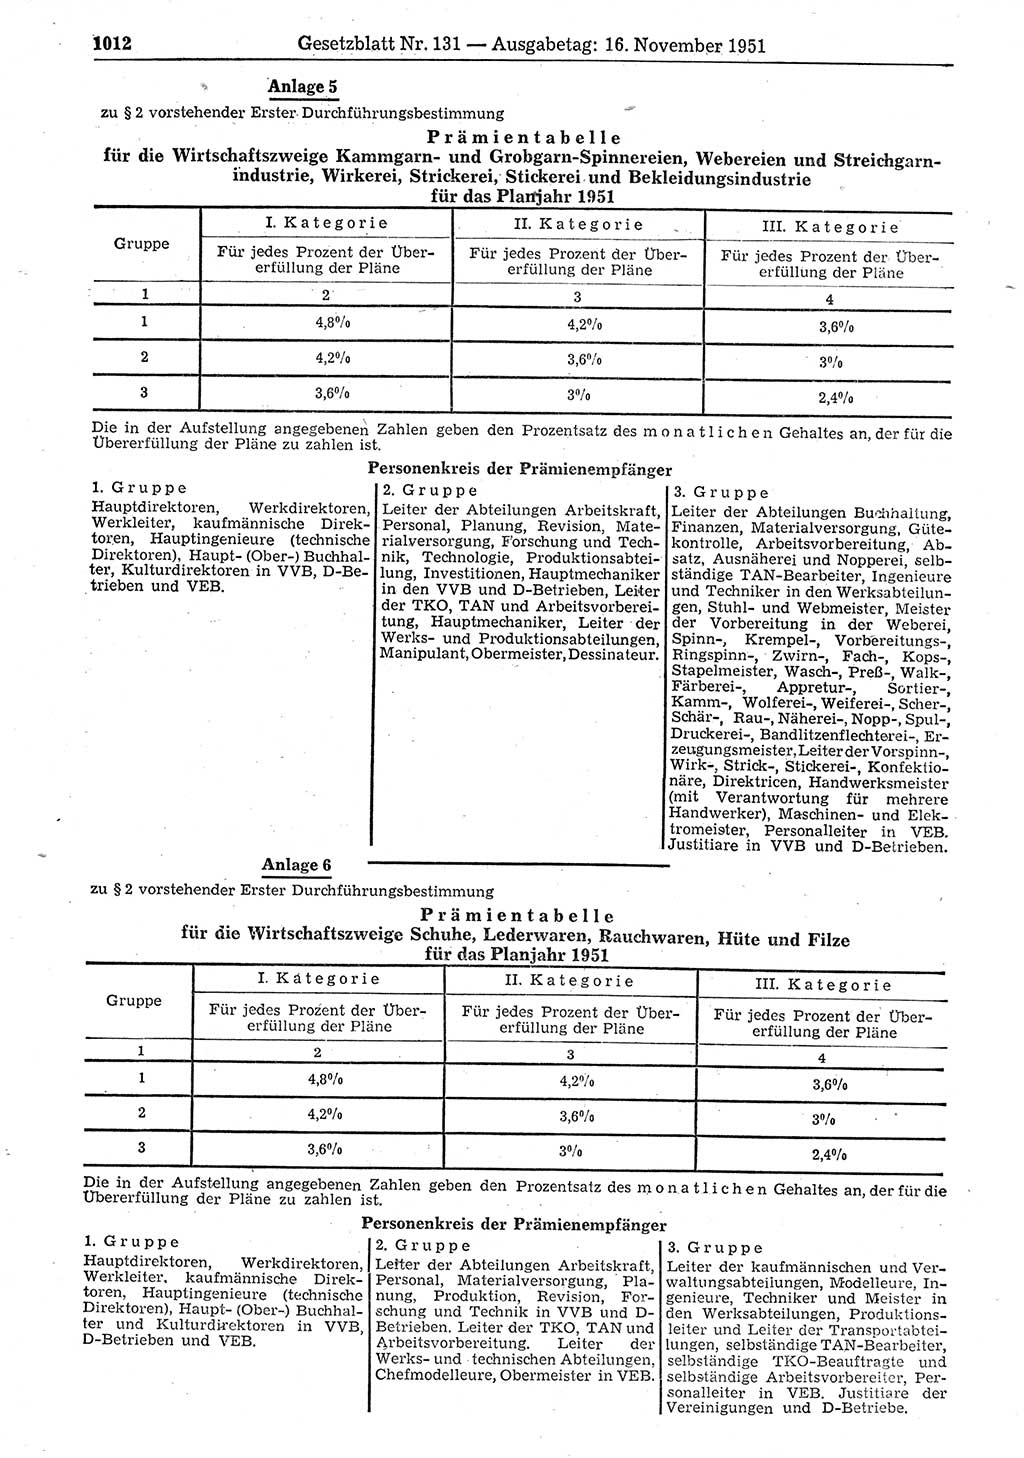 Gesetzblatt (GBl.) der Deutschen Demokratischen Republik (DDR) 1951, Seite 1012 (GBl. DDR 1951, S. 1012)